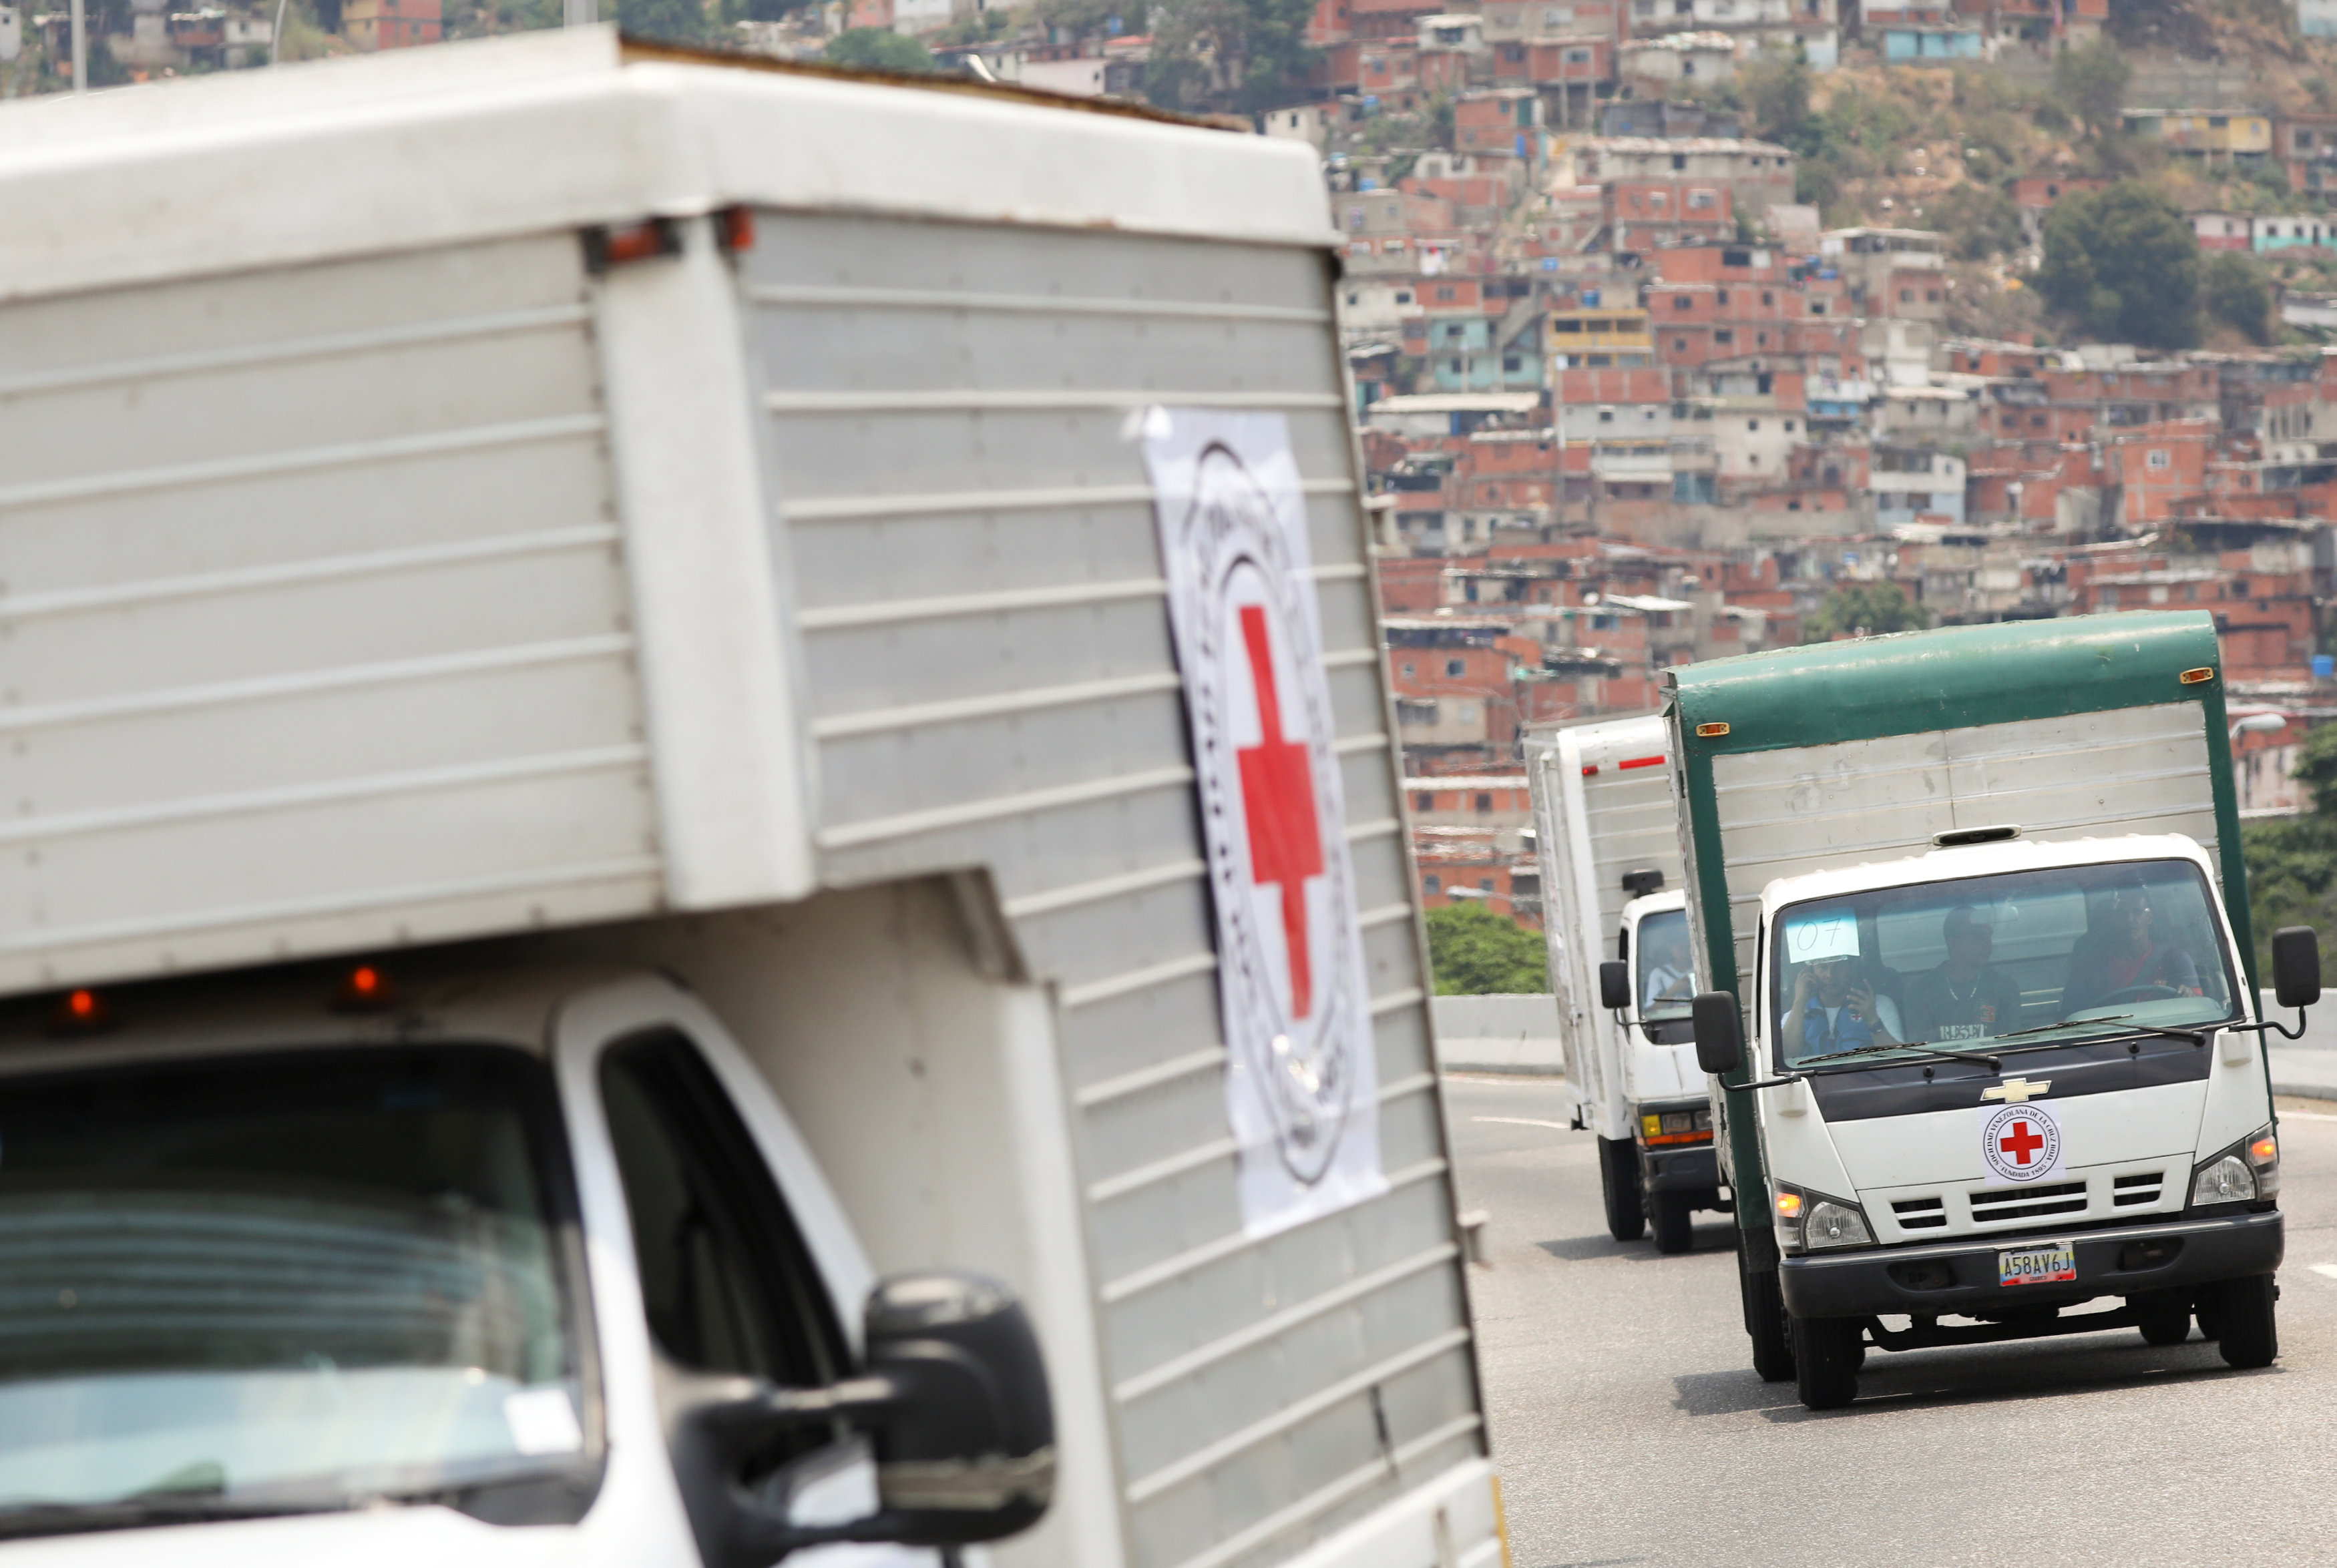 Lo que trae la ayuda humanitaria de la Cruz Roja INTERNACIONAL a Venezuela (Fotos+Video)